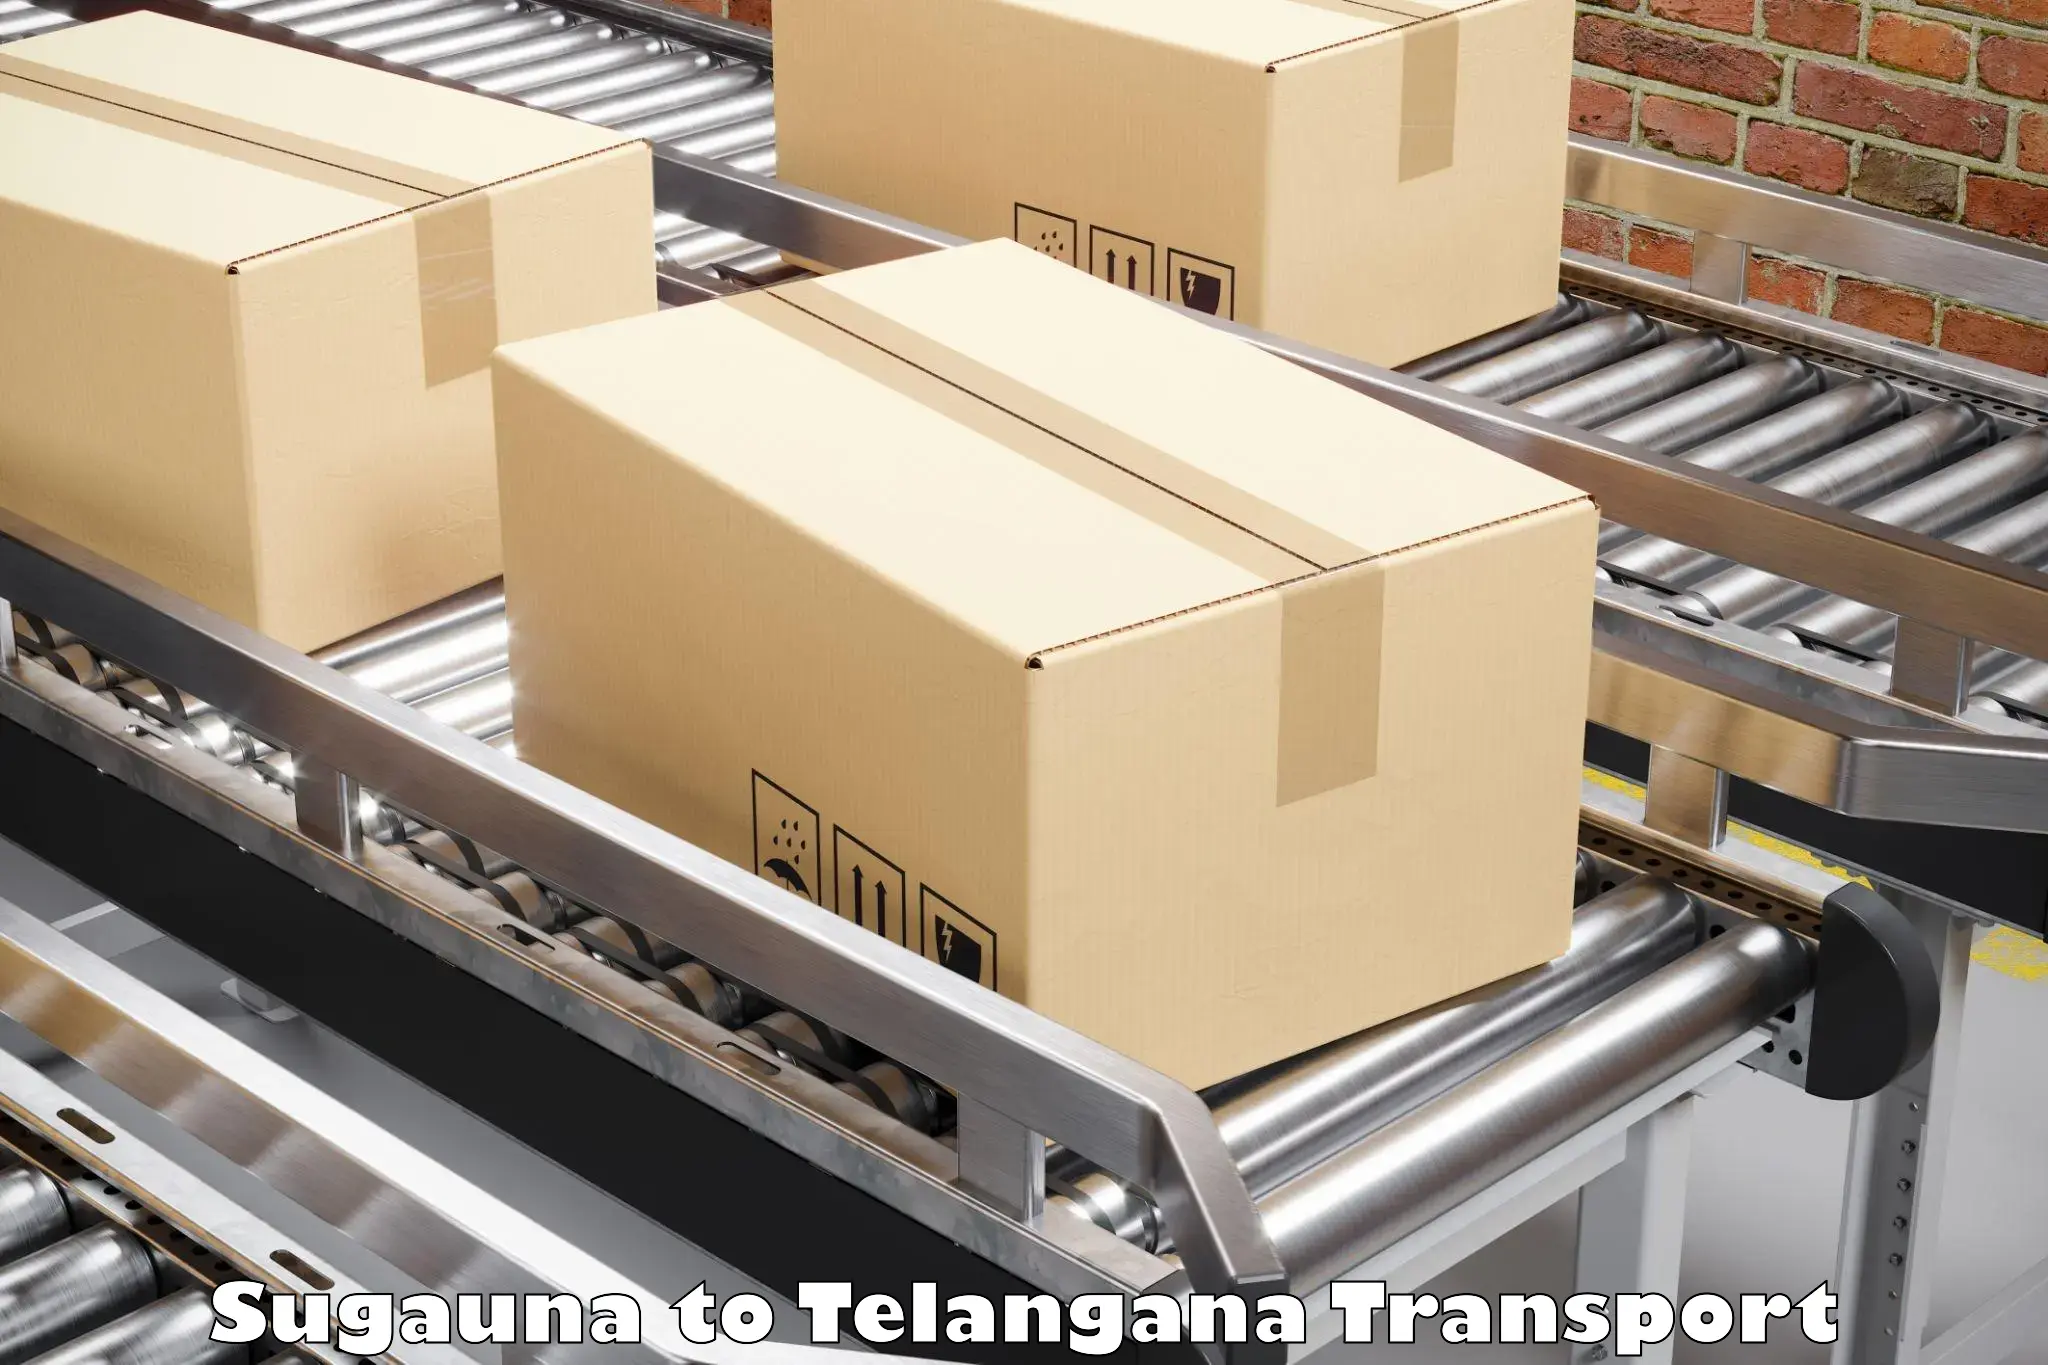 Furniture transport service Sugauna to Bejjanki